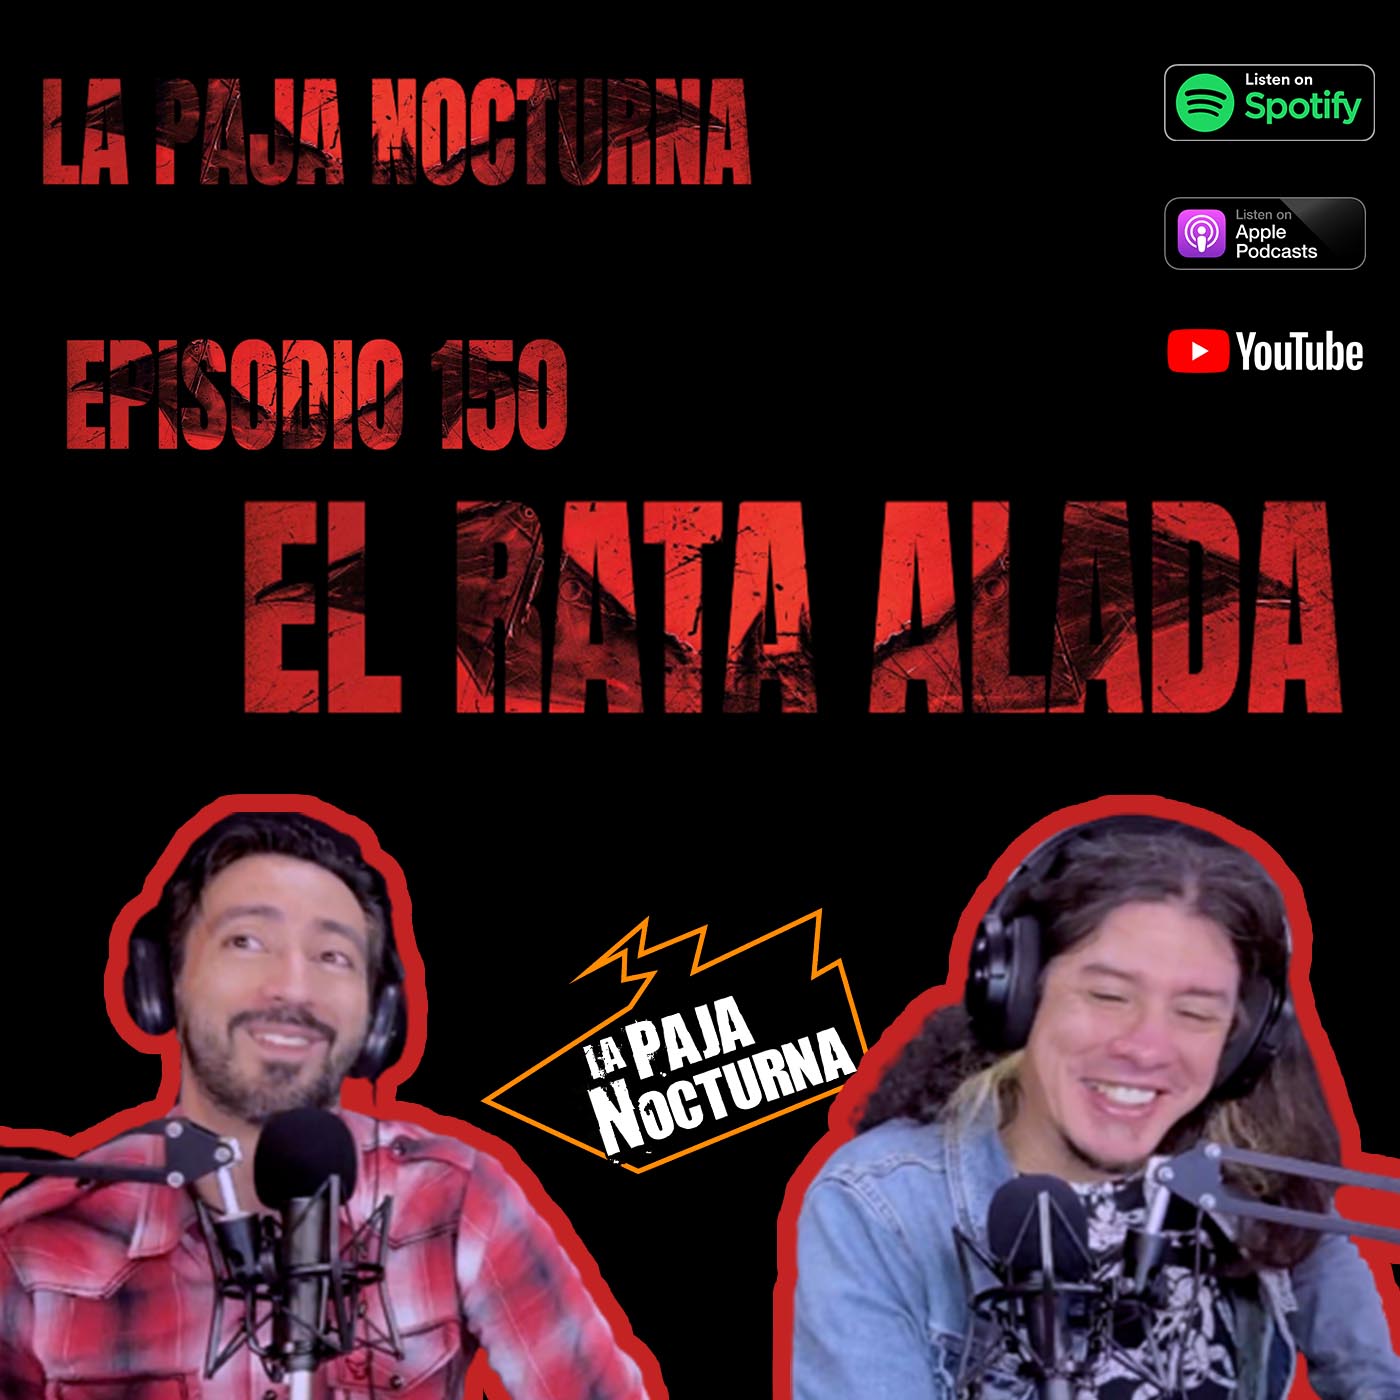 La paja nocturna podcast Episodio 150